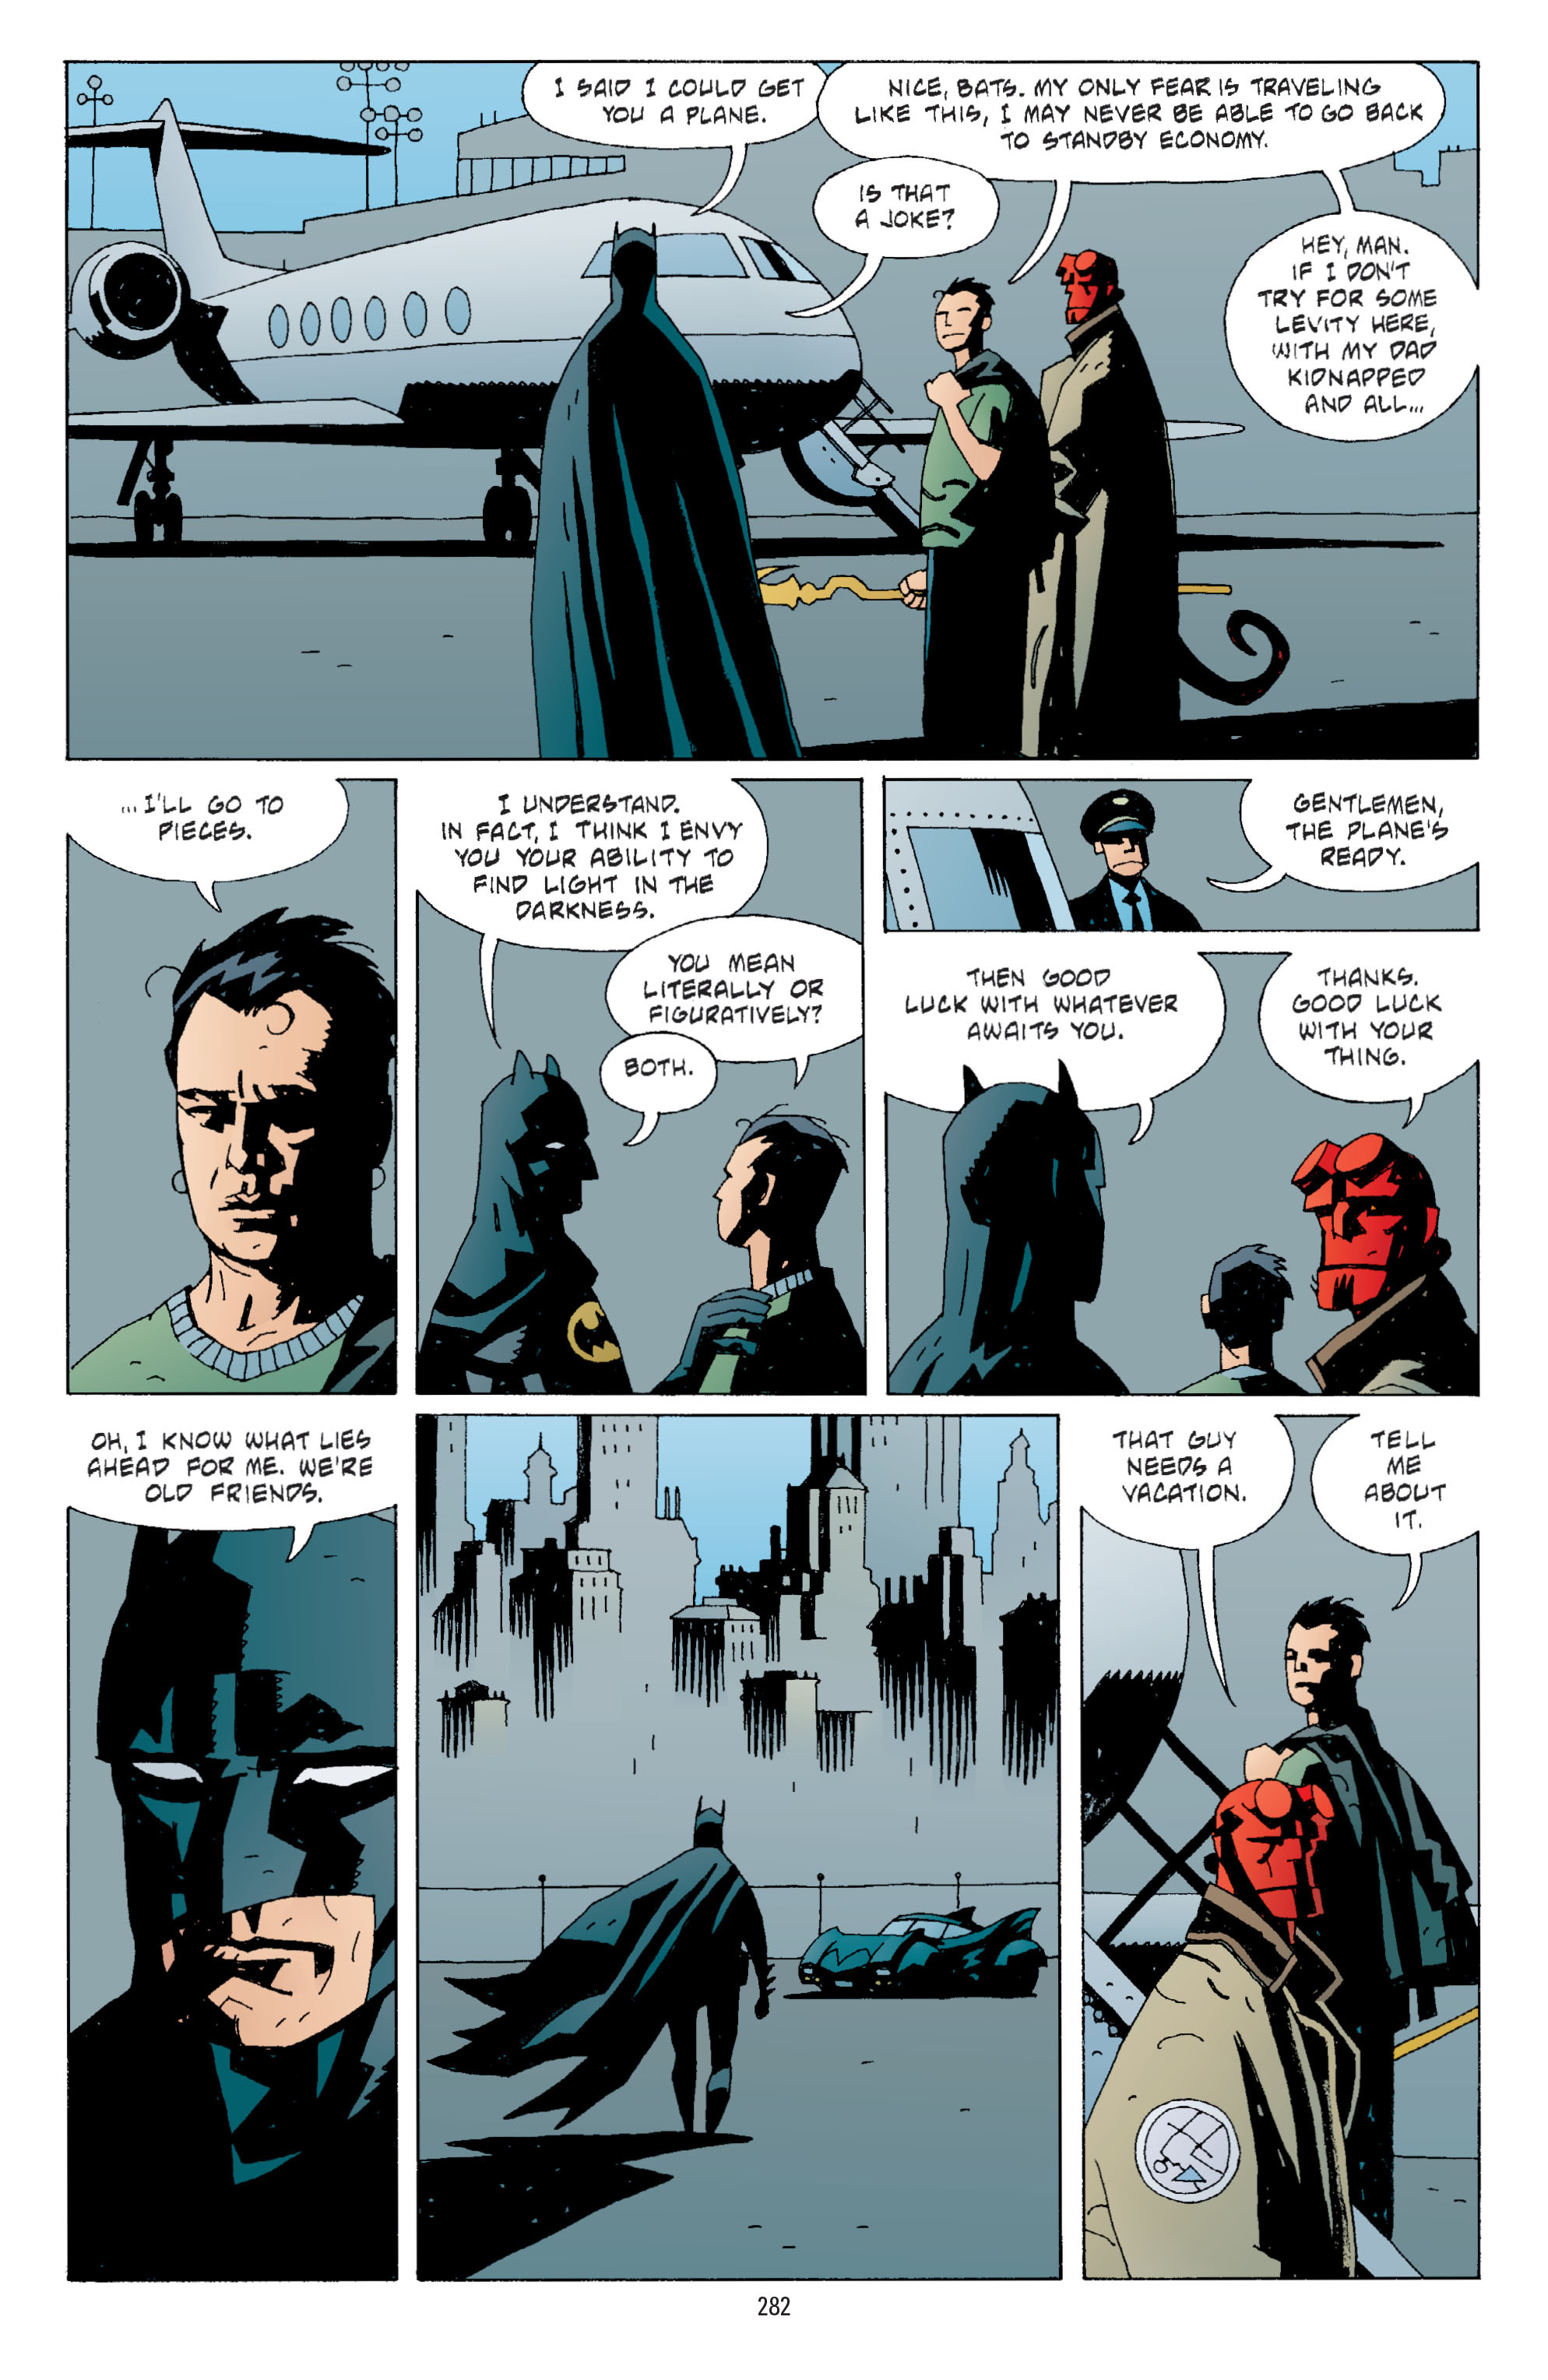 DC Comics/Dark Horse Comics: Justice League Full #1 - English 273